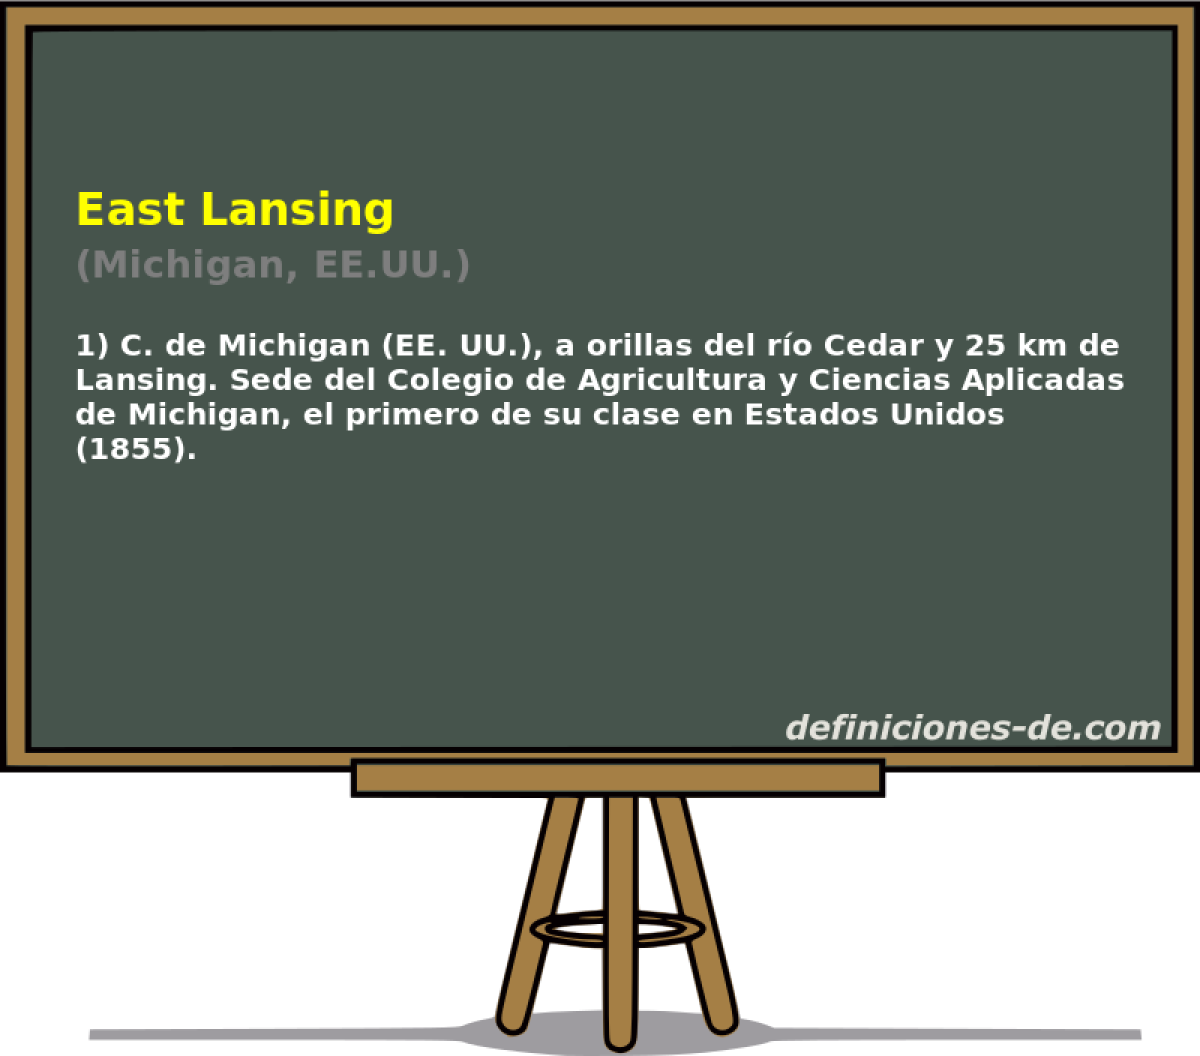 East Lansing (Michigan, EE.UU.)